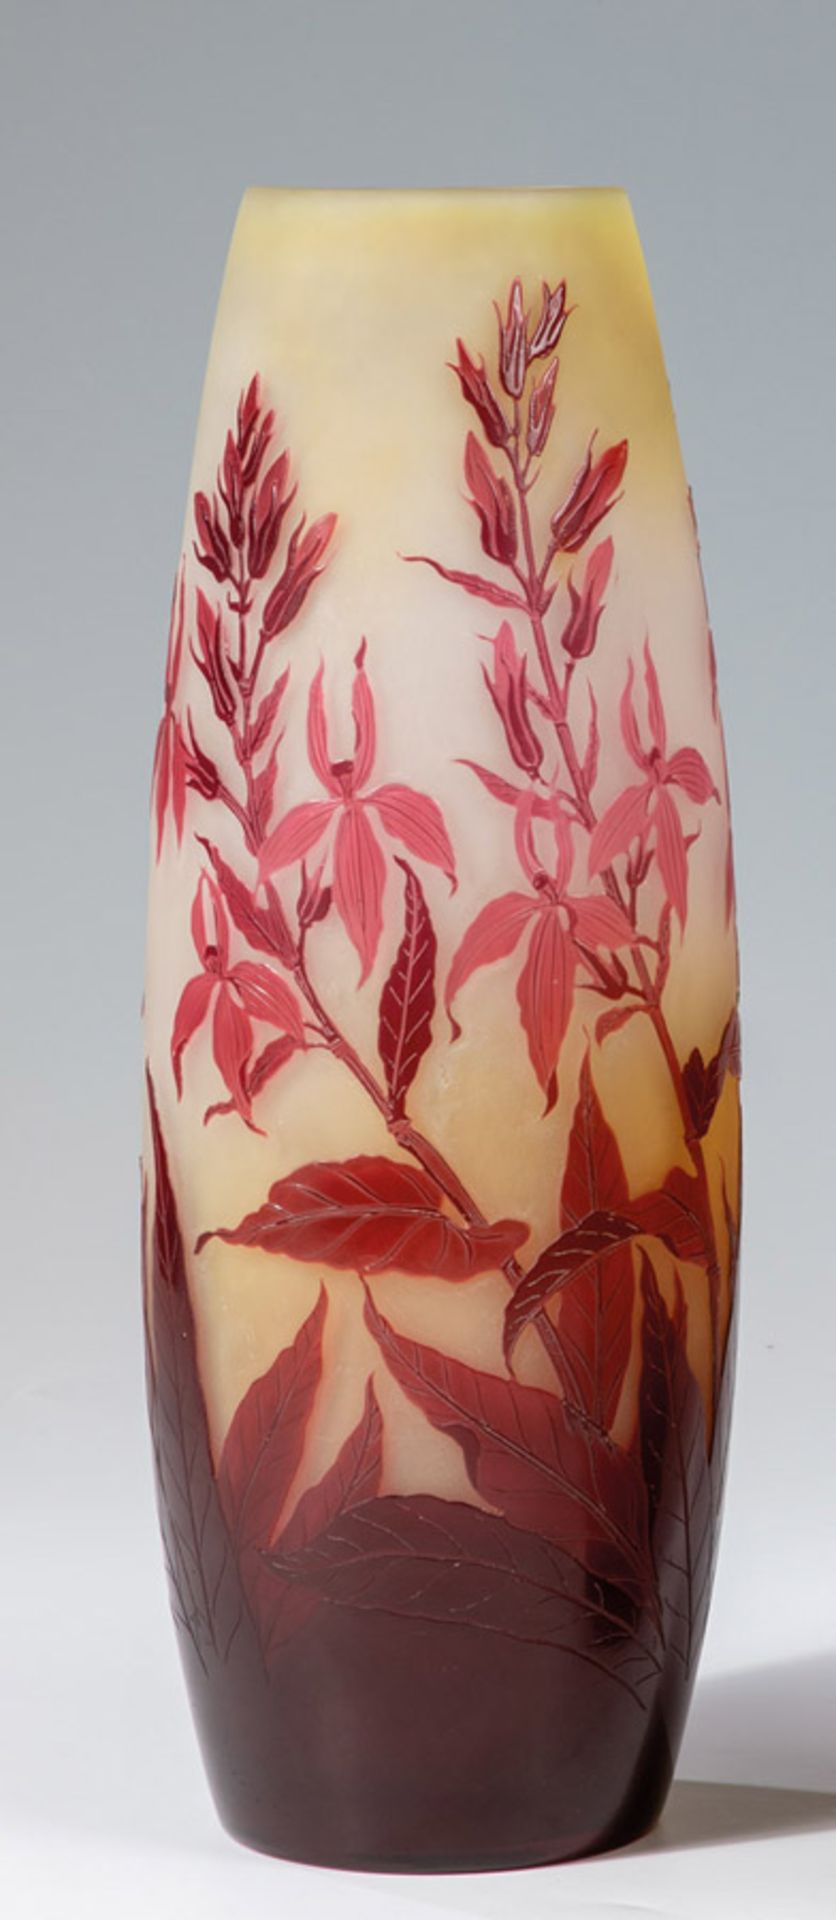 Vase mit Kardinals - LobenieEmile Gallé, Nancy, 1920er Jahre Farbloses Glas mit zitronengelbem